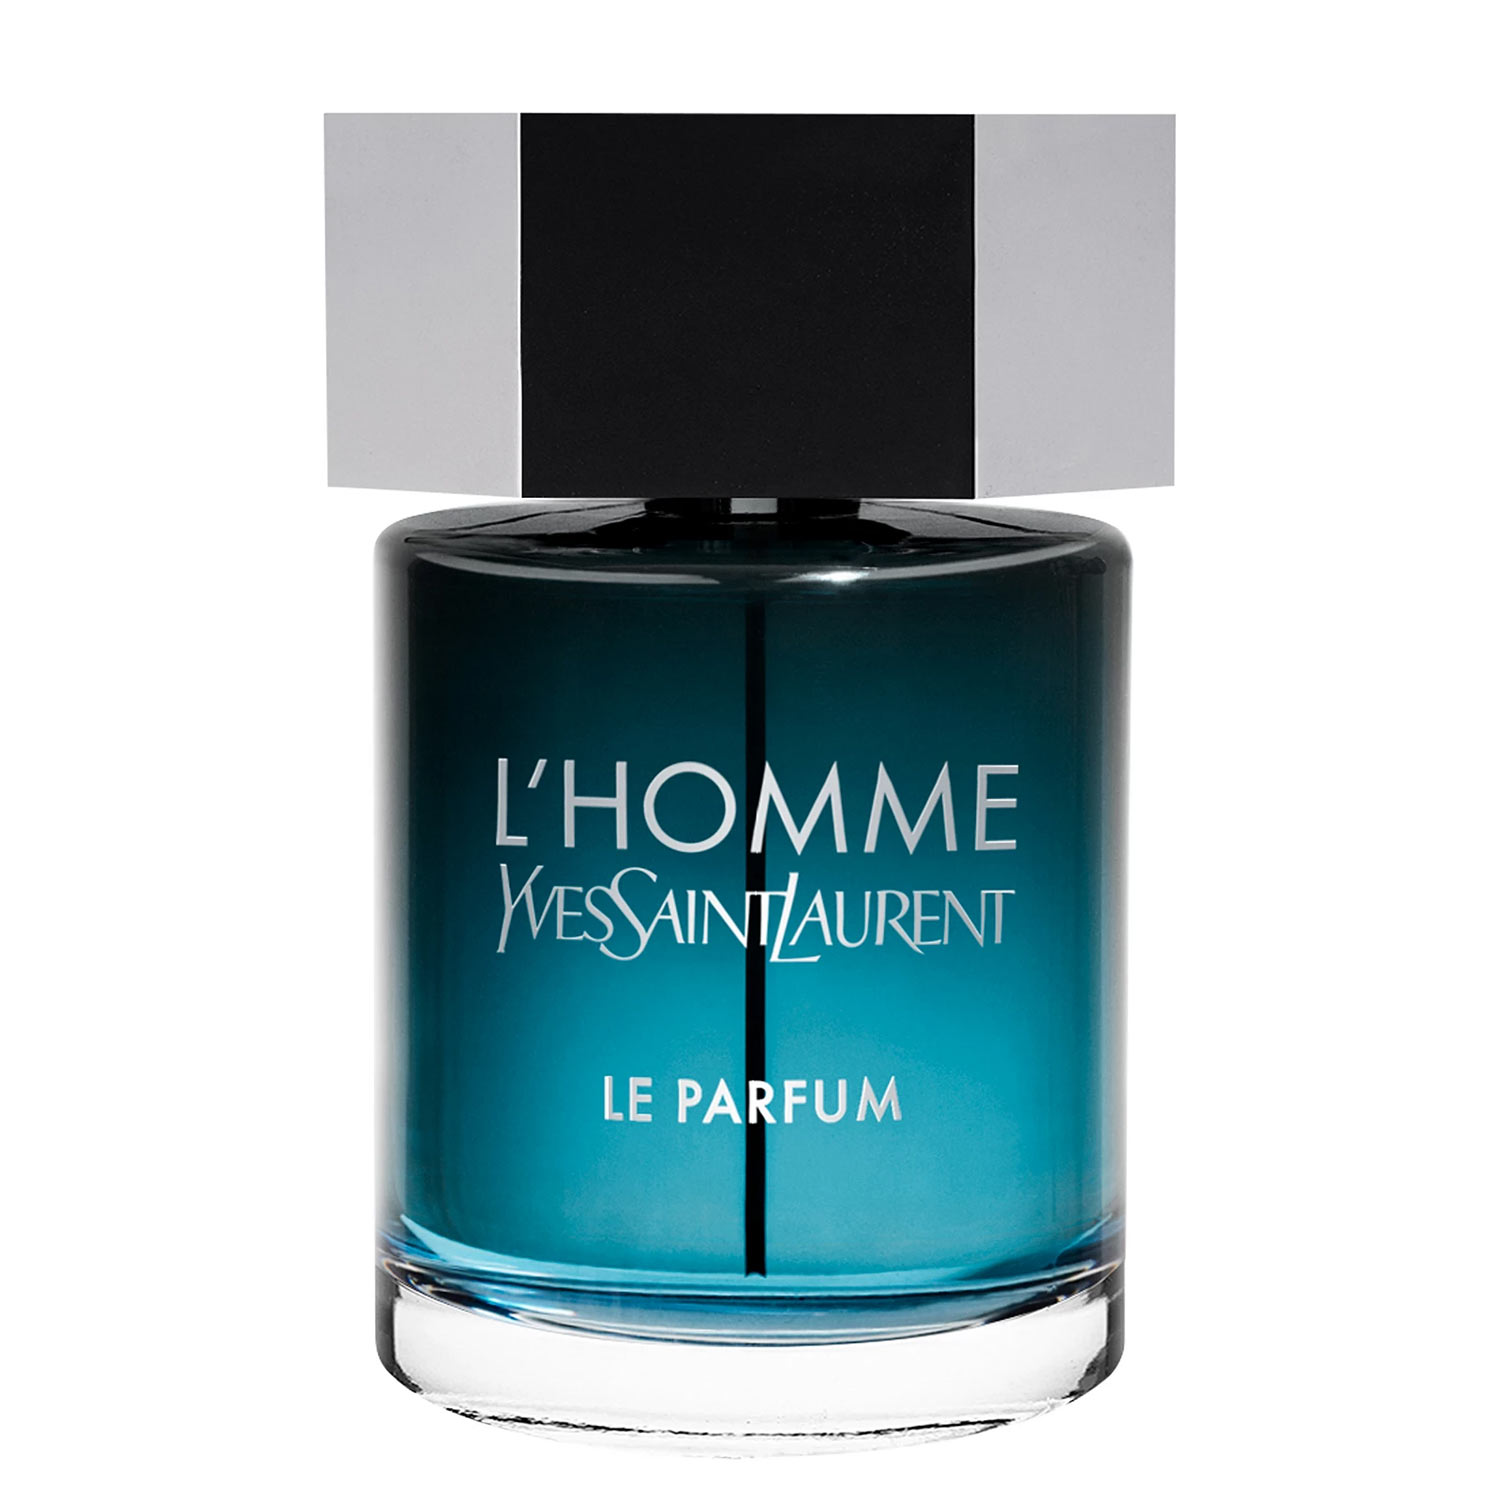 L'Homme-Le-Parfum-Yves-Saint-Laurent